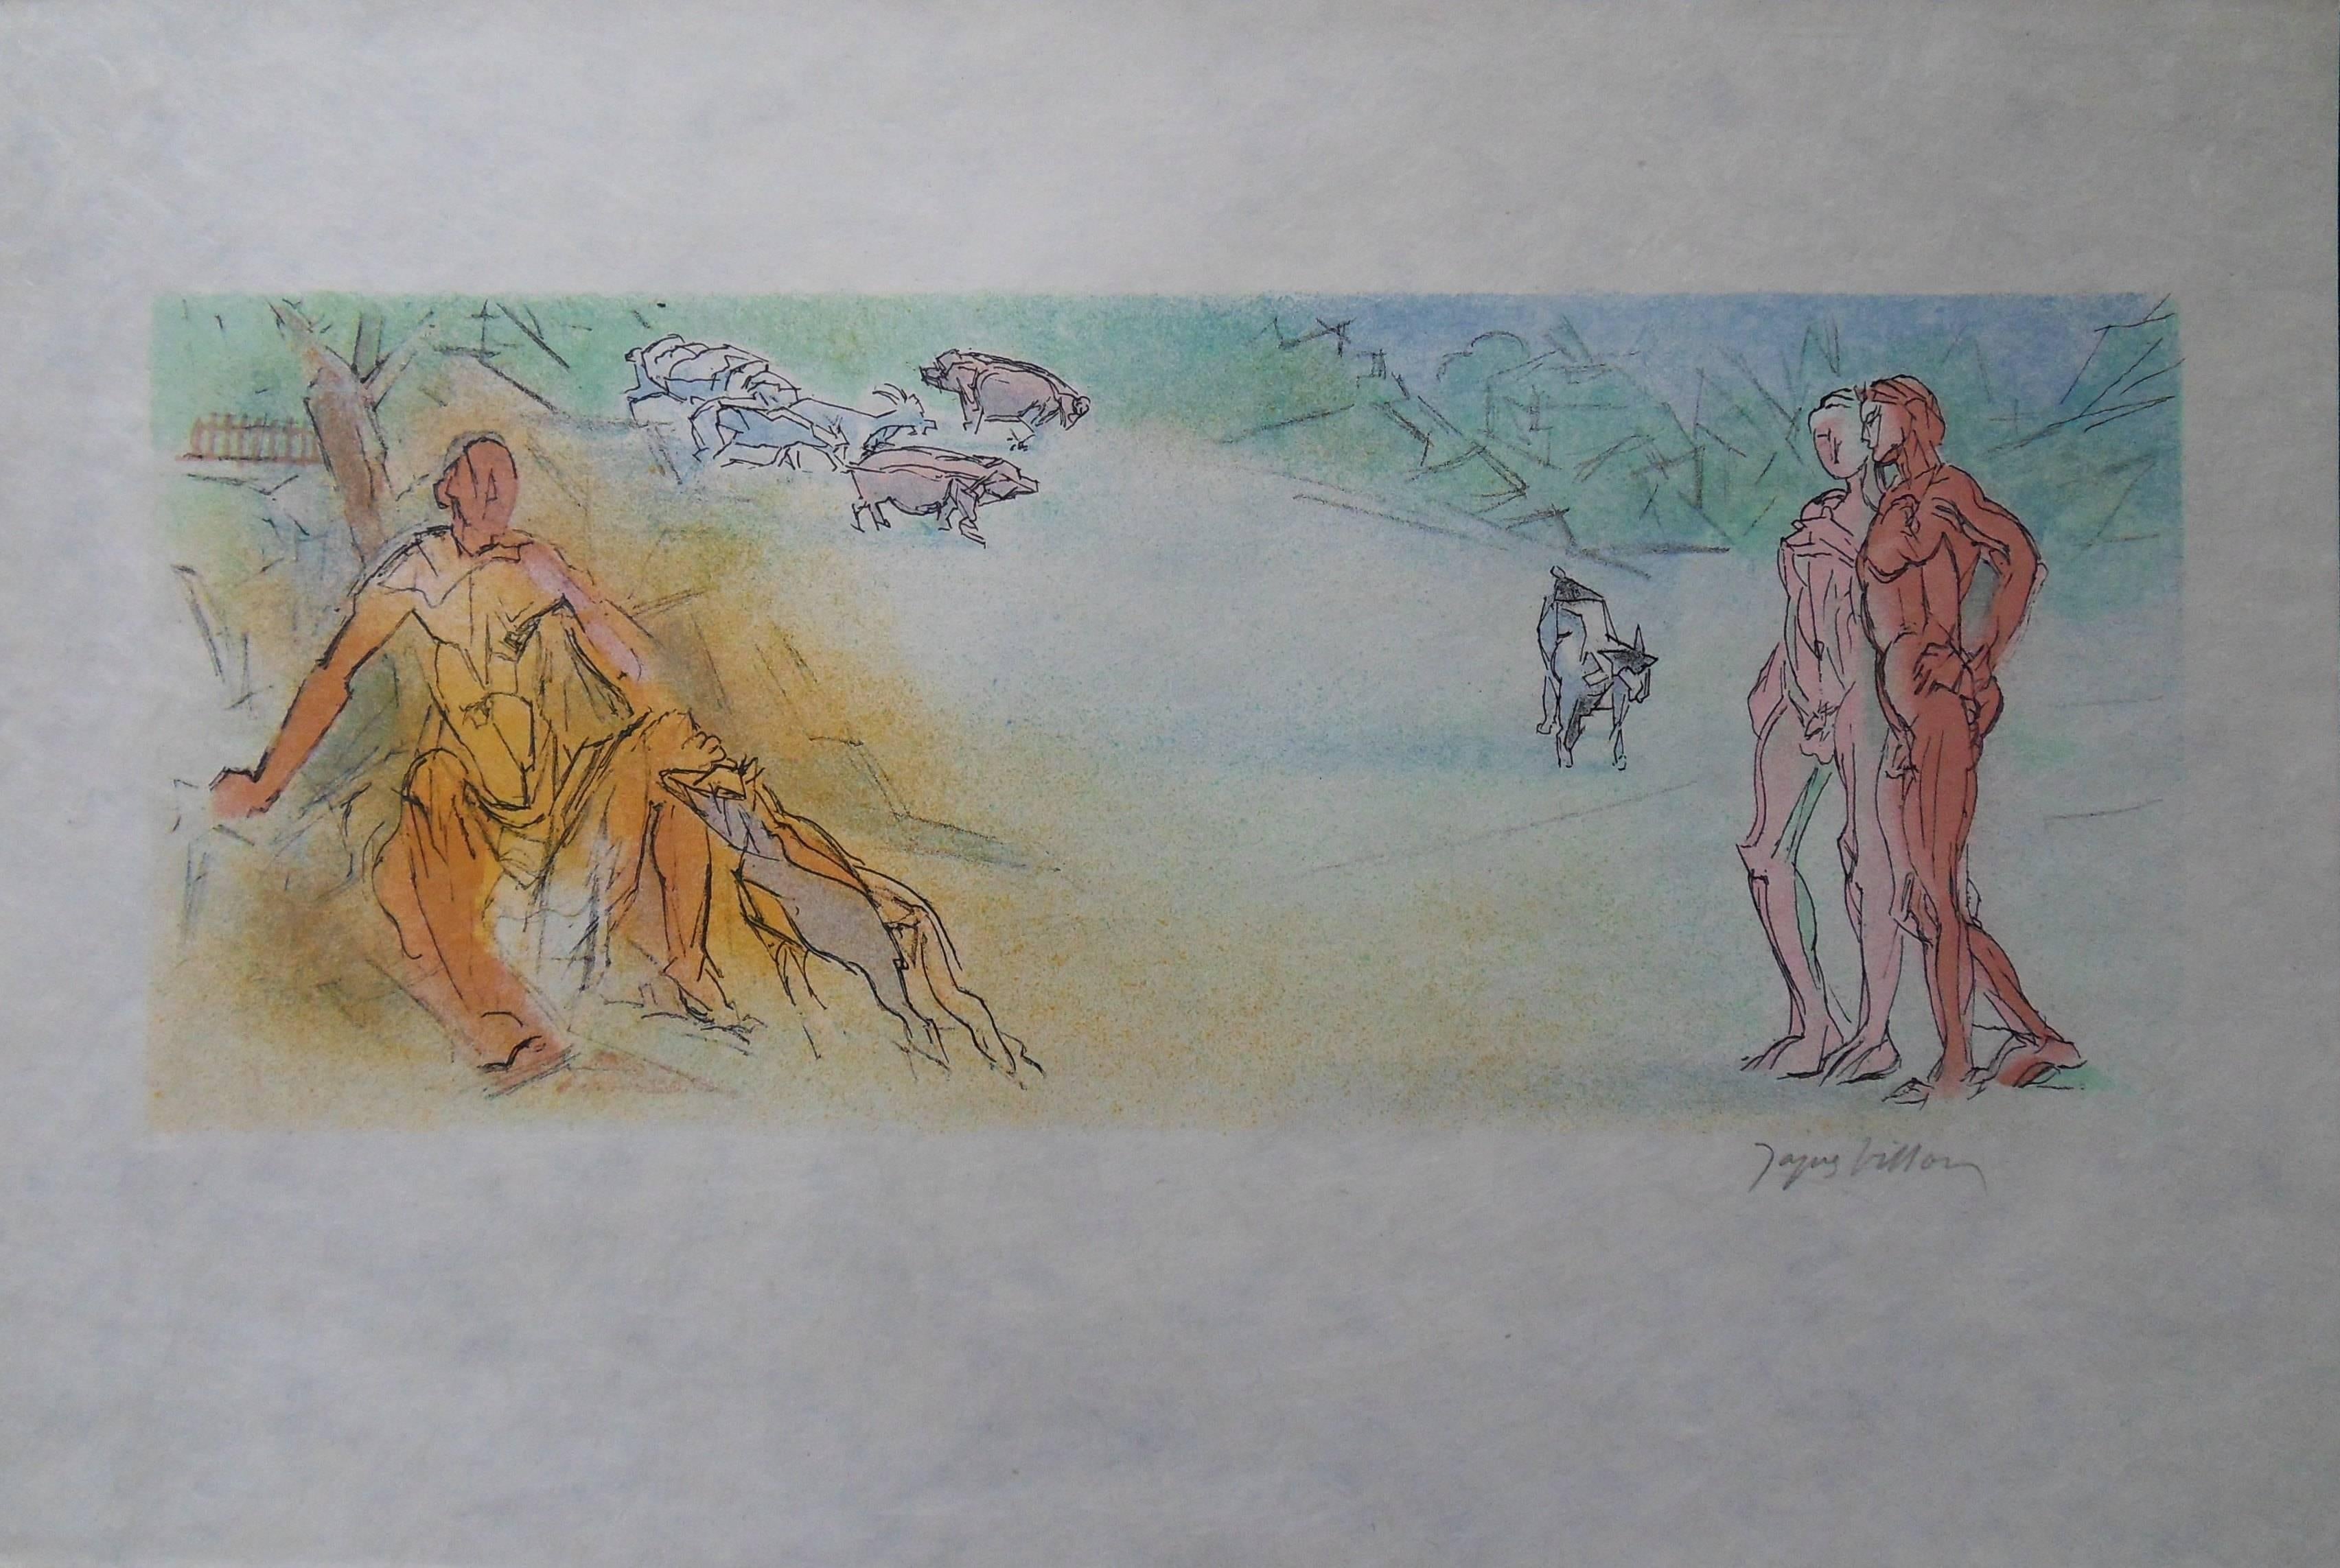 Jacques Villon Figurative Print - Meeting Alexis in a Landscape - Signed lithograph - Mourlot 1953